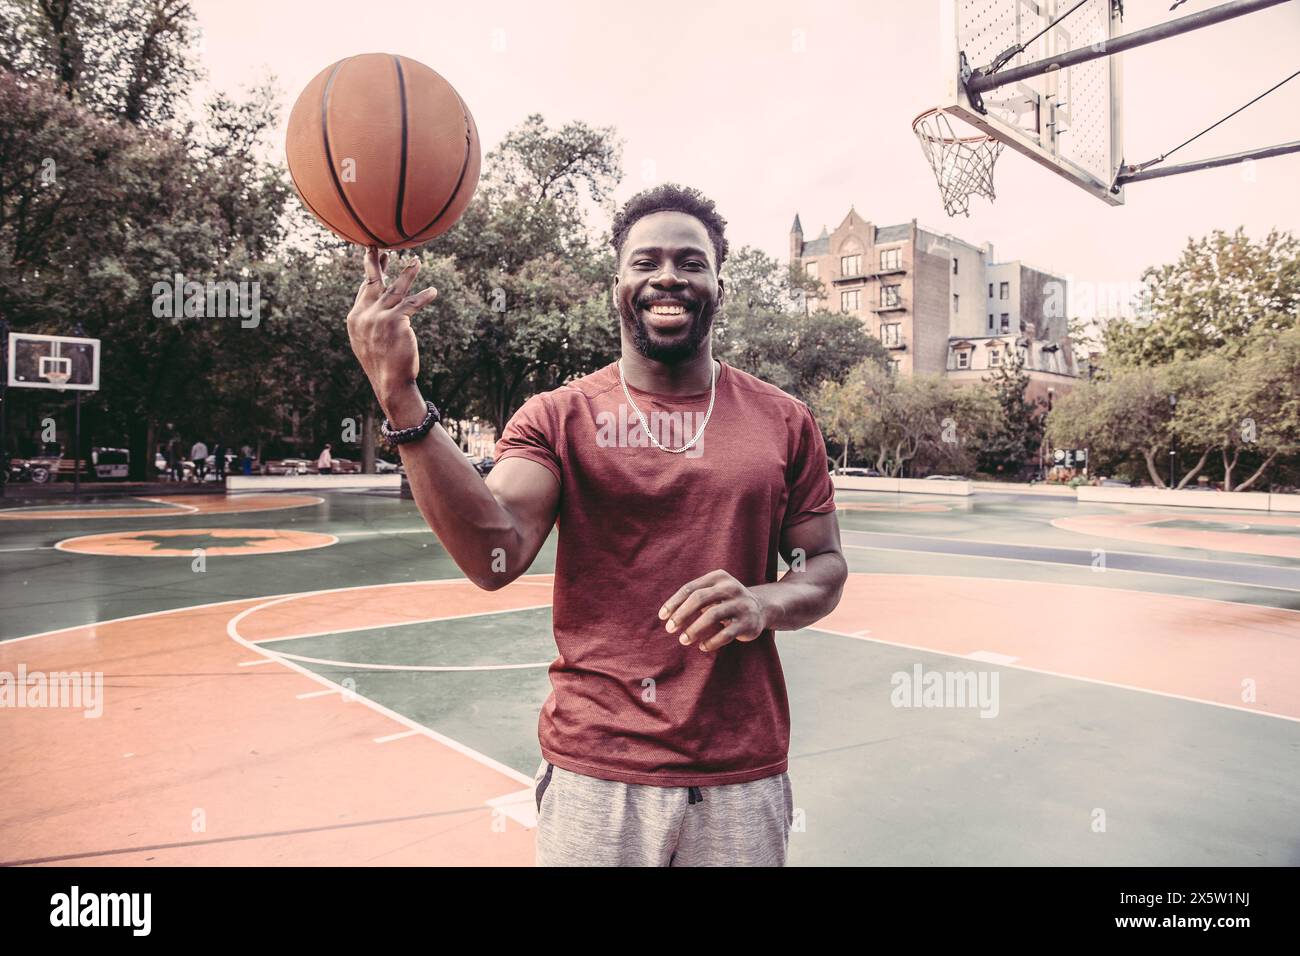 USA, Pennsylvania, Philadelphia, ein lächelnder Mann, der Basketballball auf der Fingerspitze dreht Stockfoto